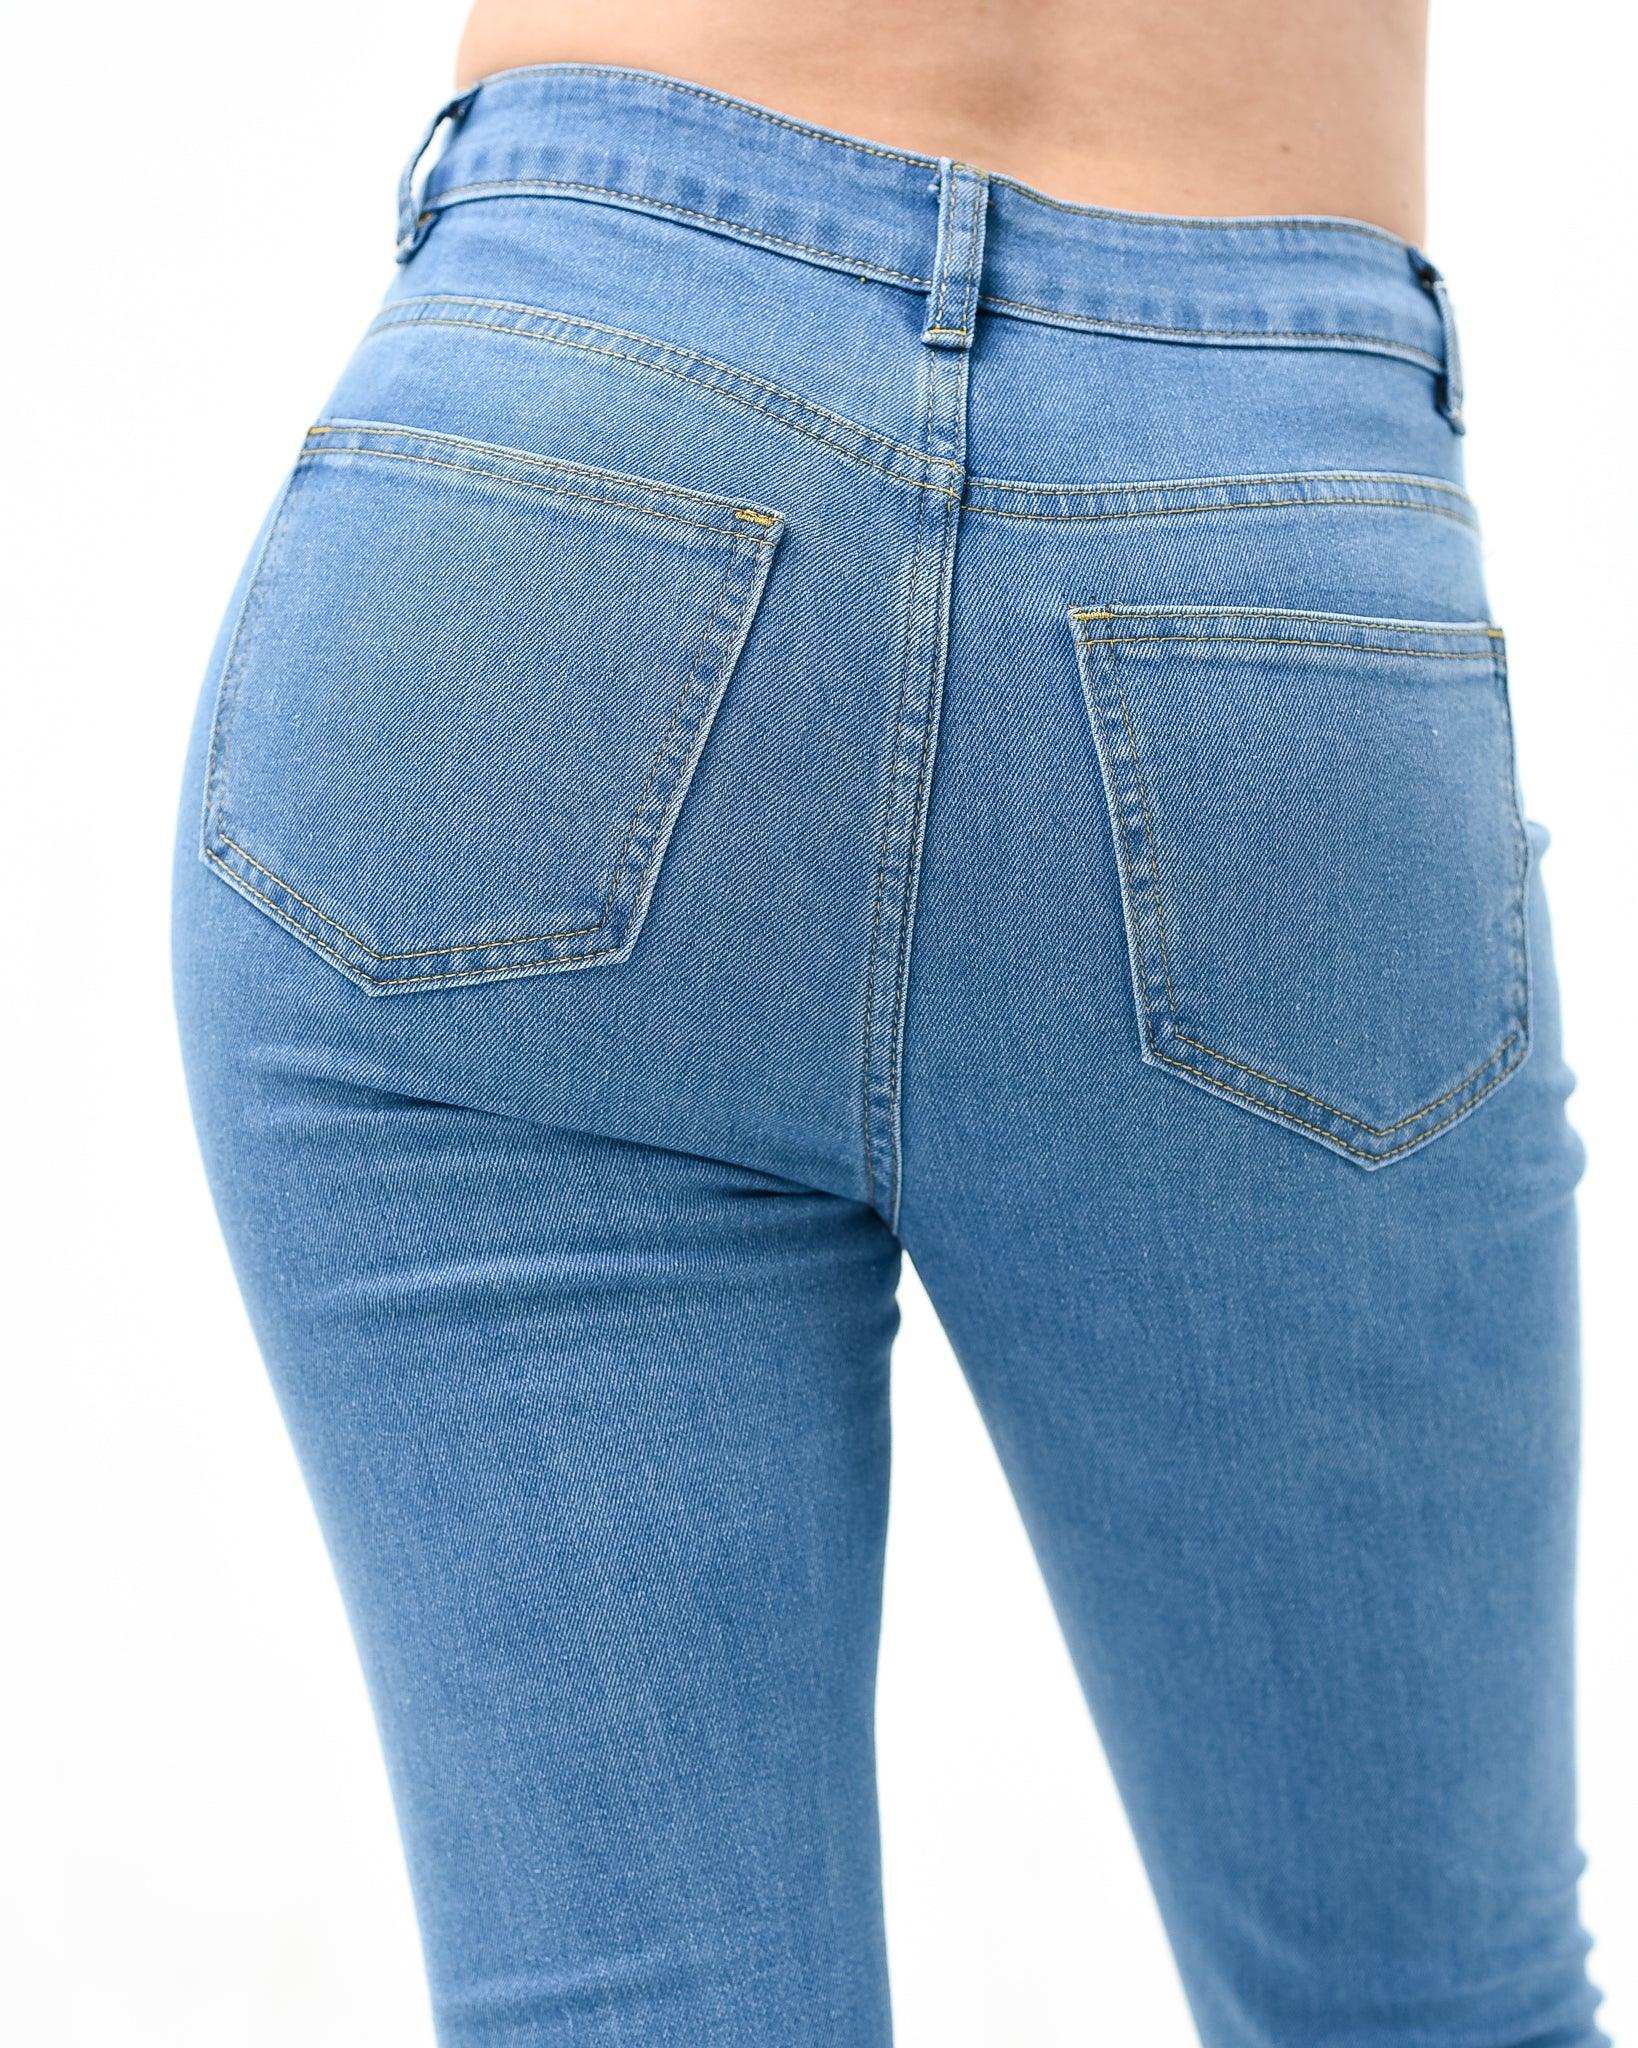 Skinny jeans XD100 - XD21